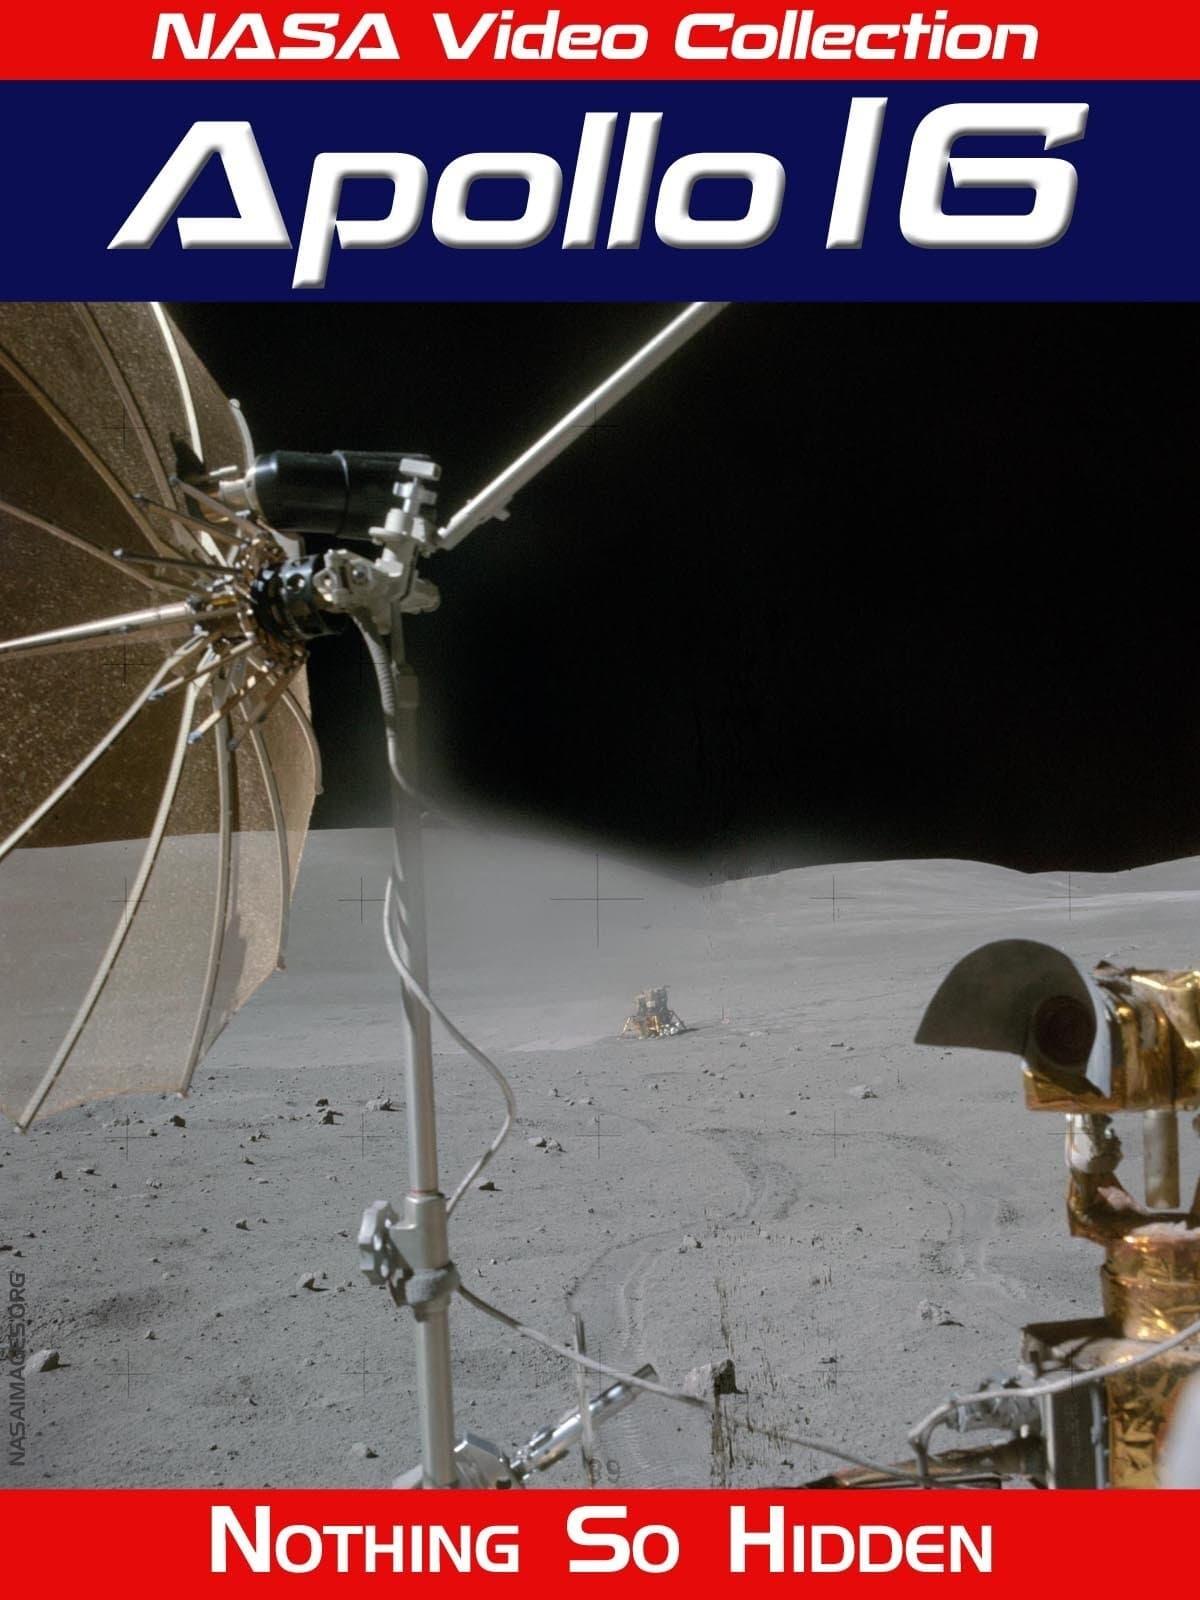 Apollo 16 - Nothing So Hidden poster